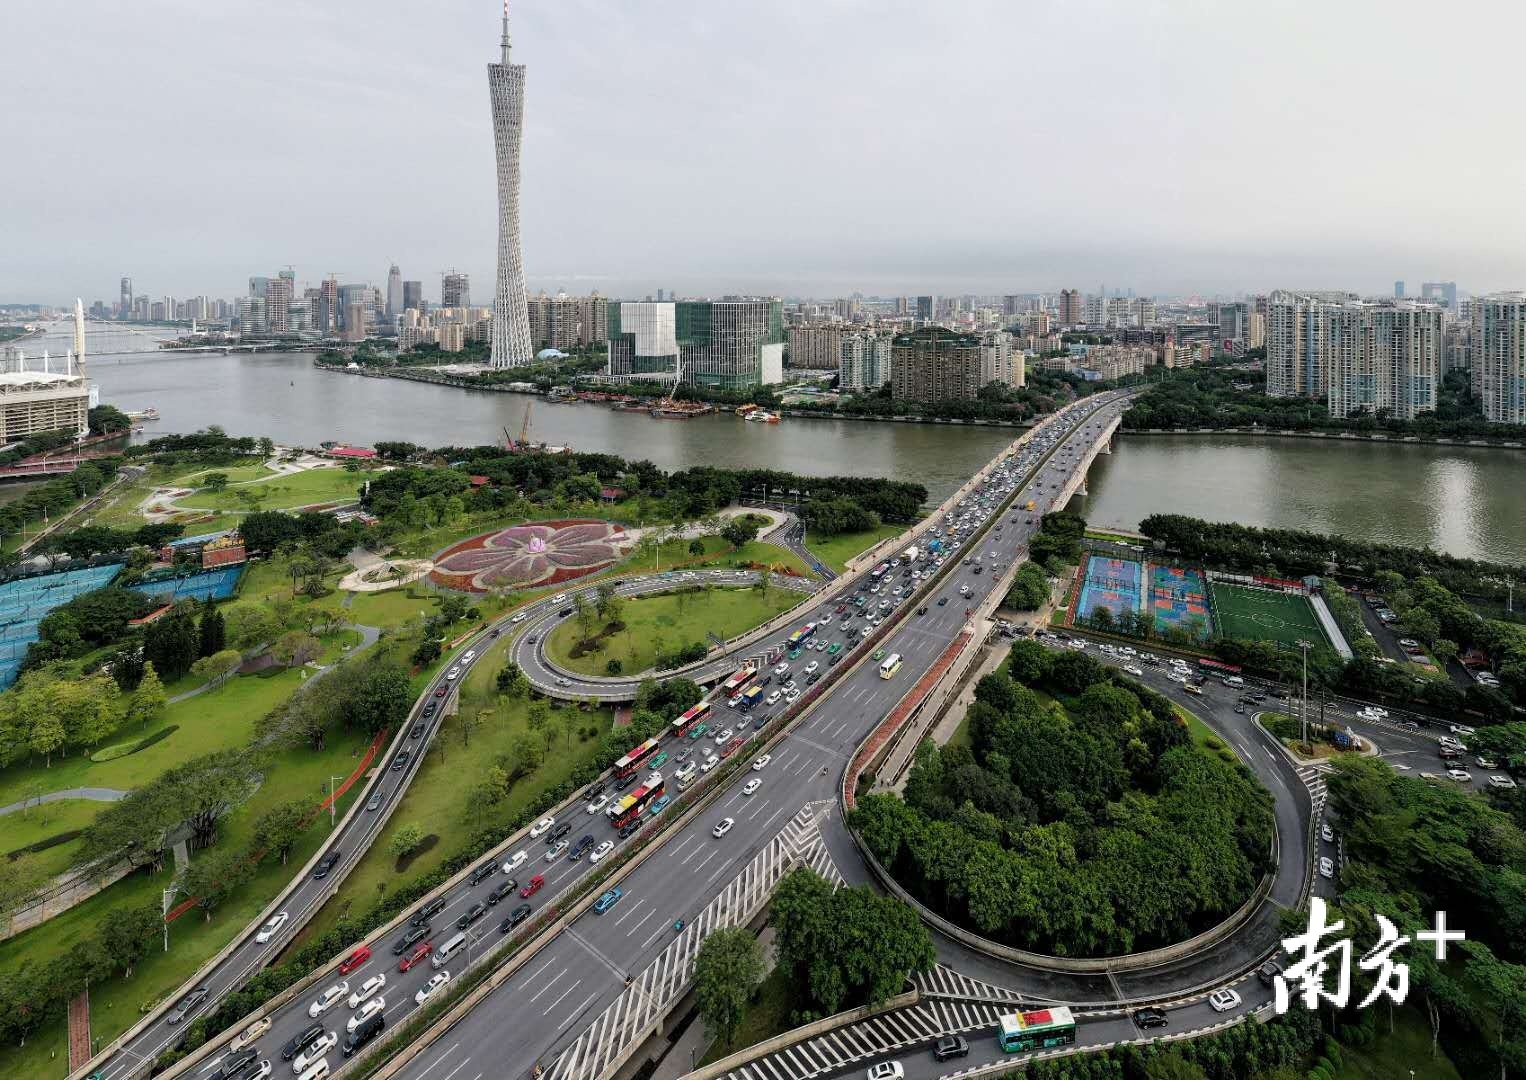 下午5时30分左右，广州大道车流逐渐增多，广州大桥南往北出现短时拥堵。 张冠军 摄